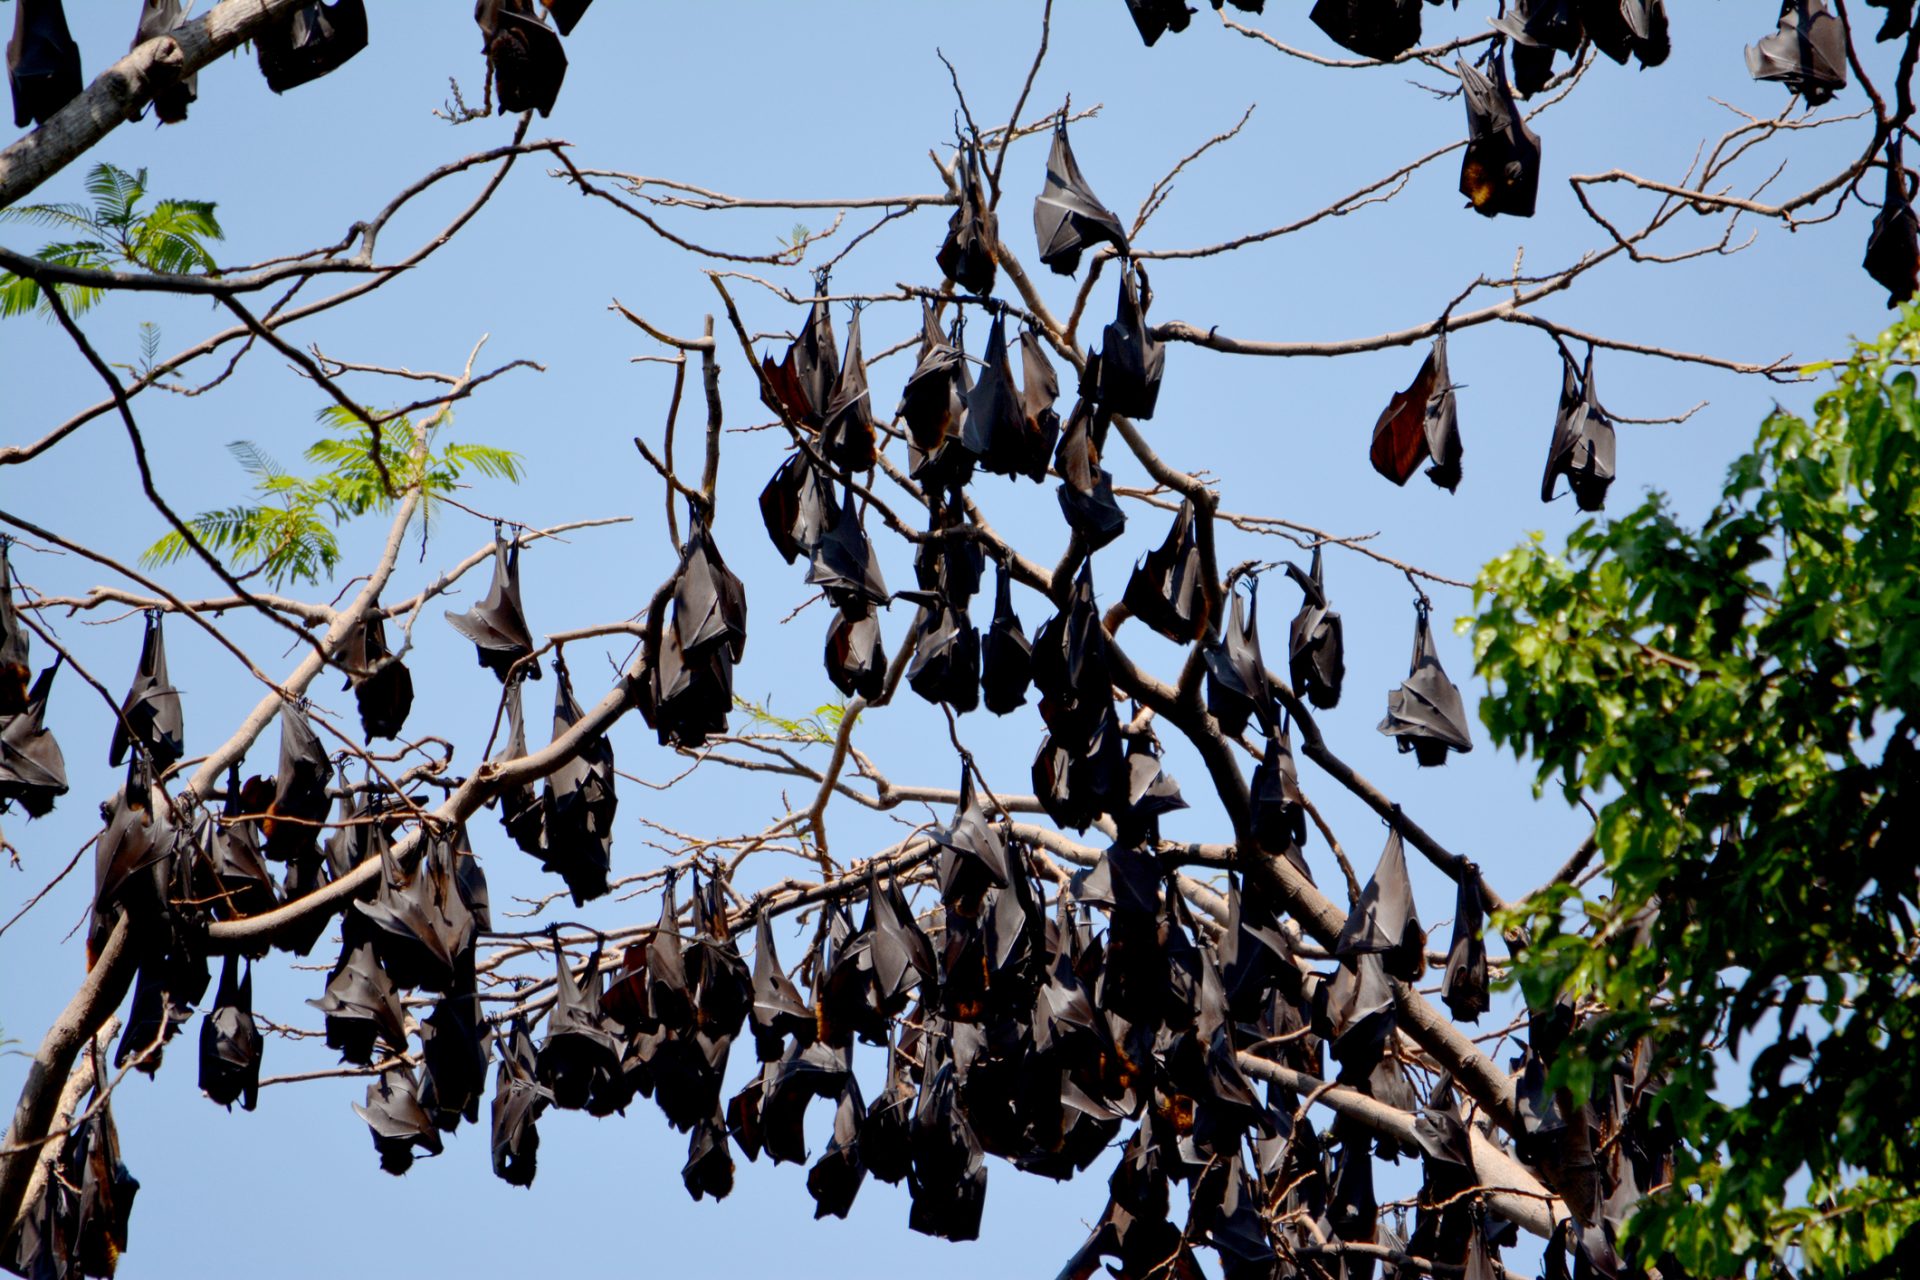 Morcegos controlam pragas no Vale do Tua